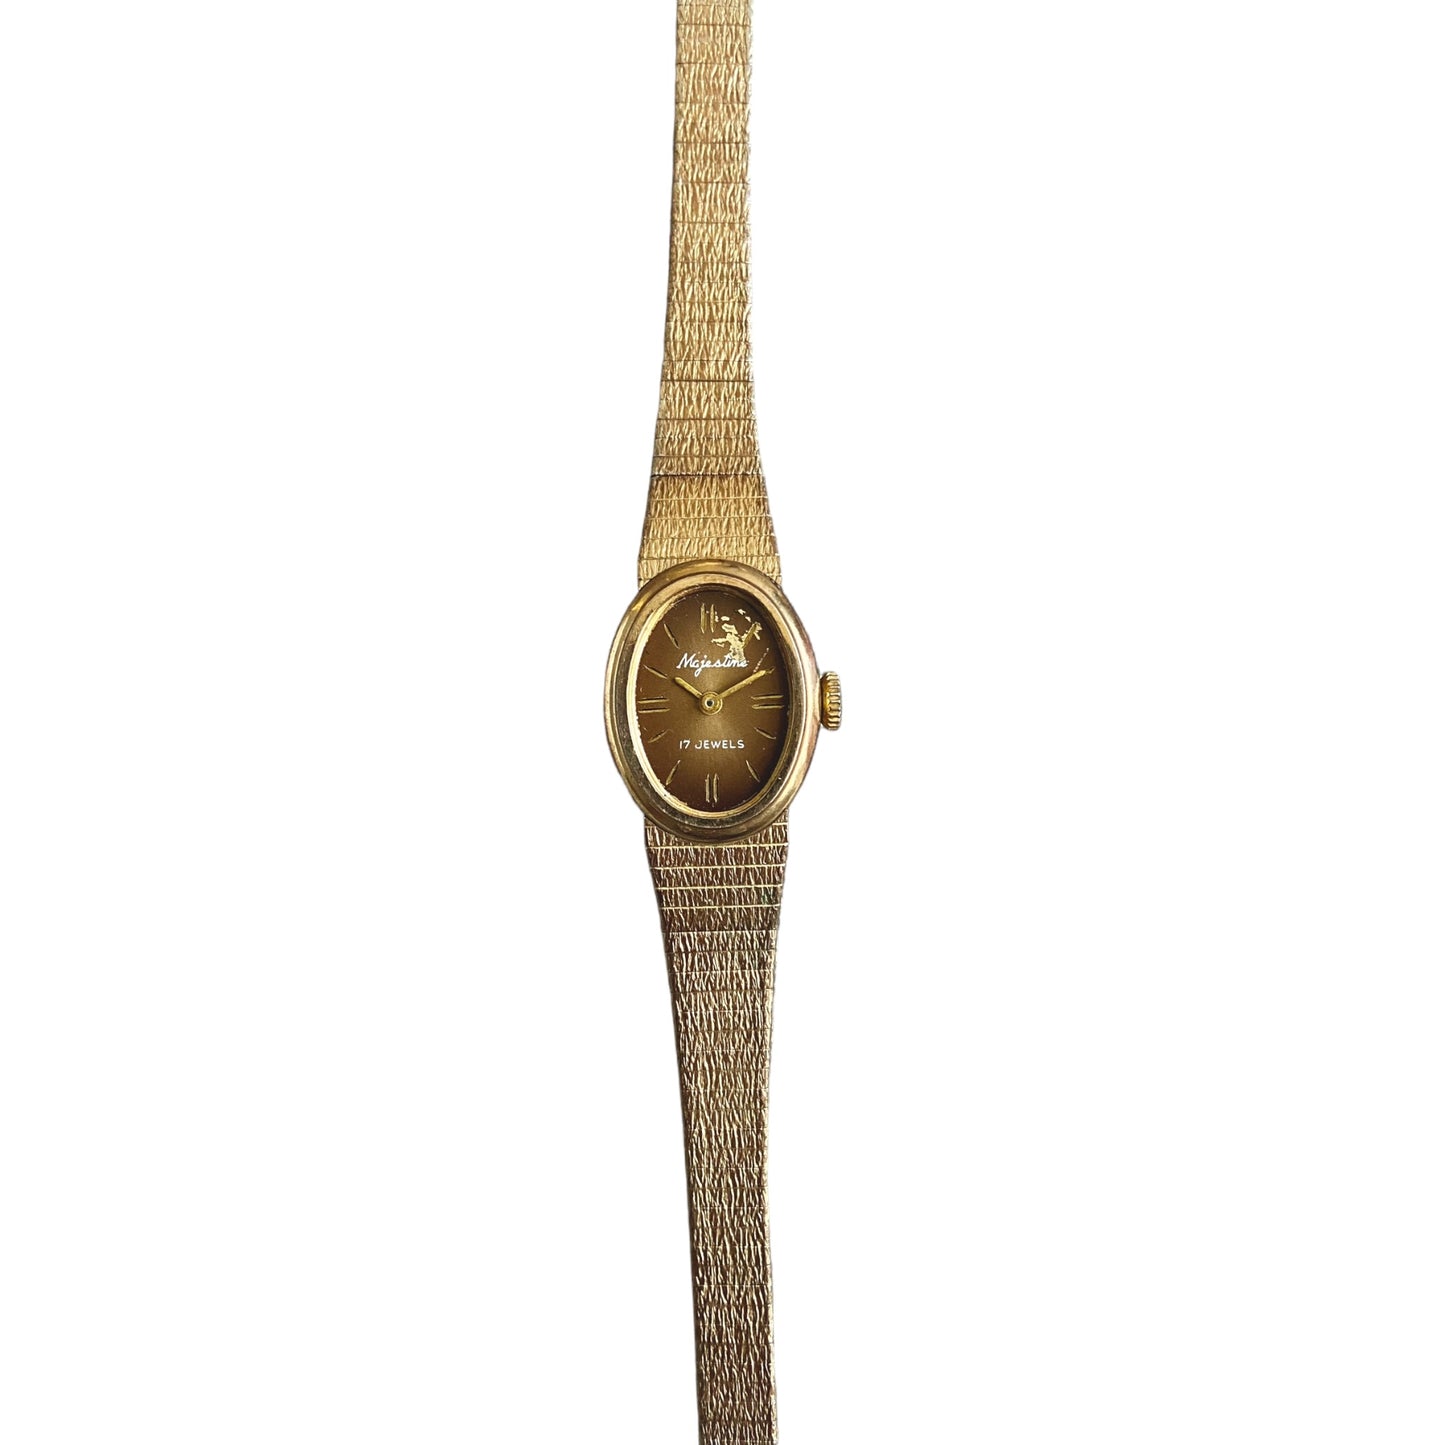 One-of-one | Majestine 17 jewels gold watch